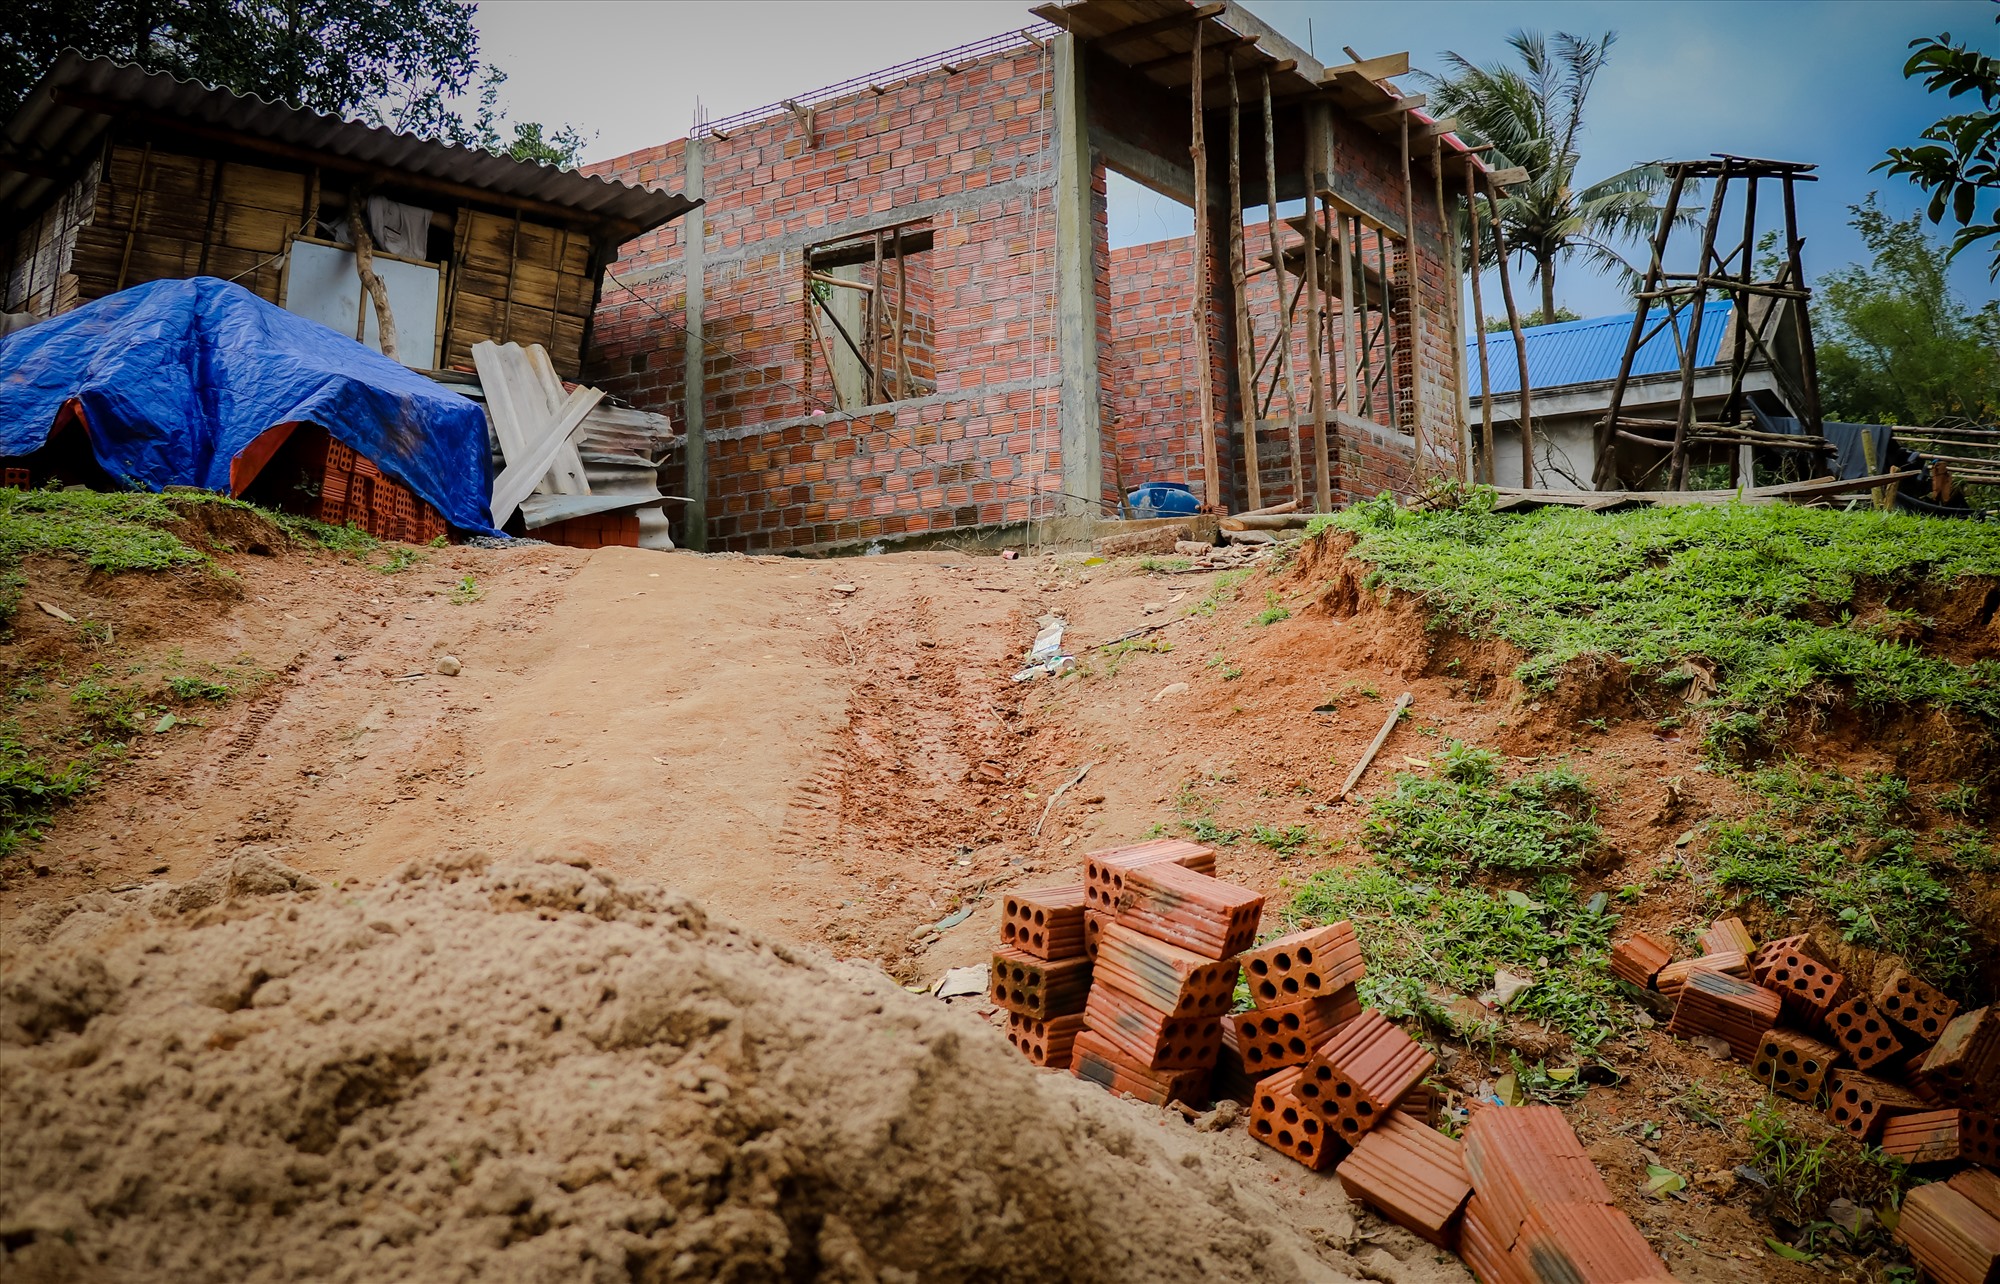 Những căn nhà mới sắp được hoàn thiện giúp người dân xã Húc an cư lạc nghiệp hơn.